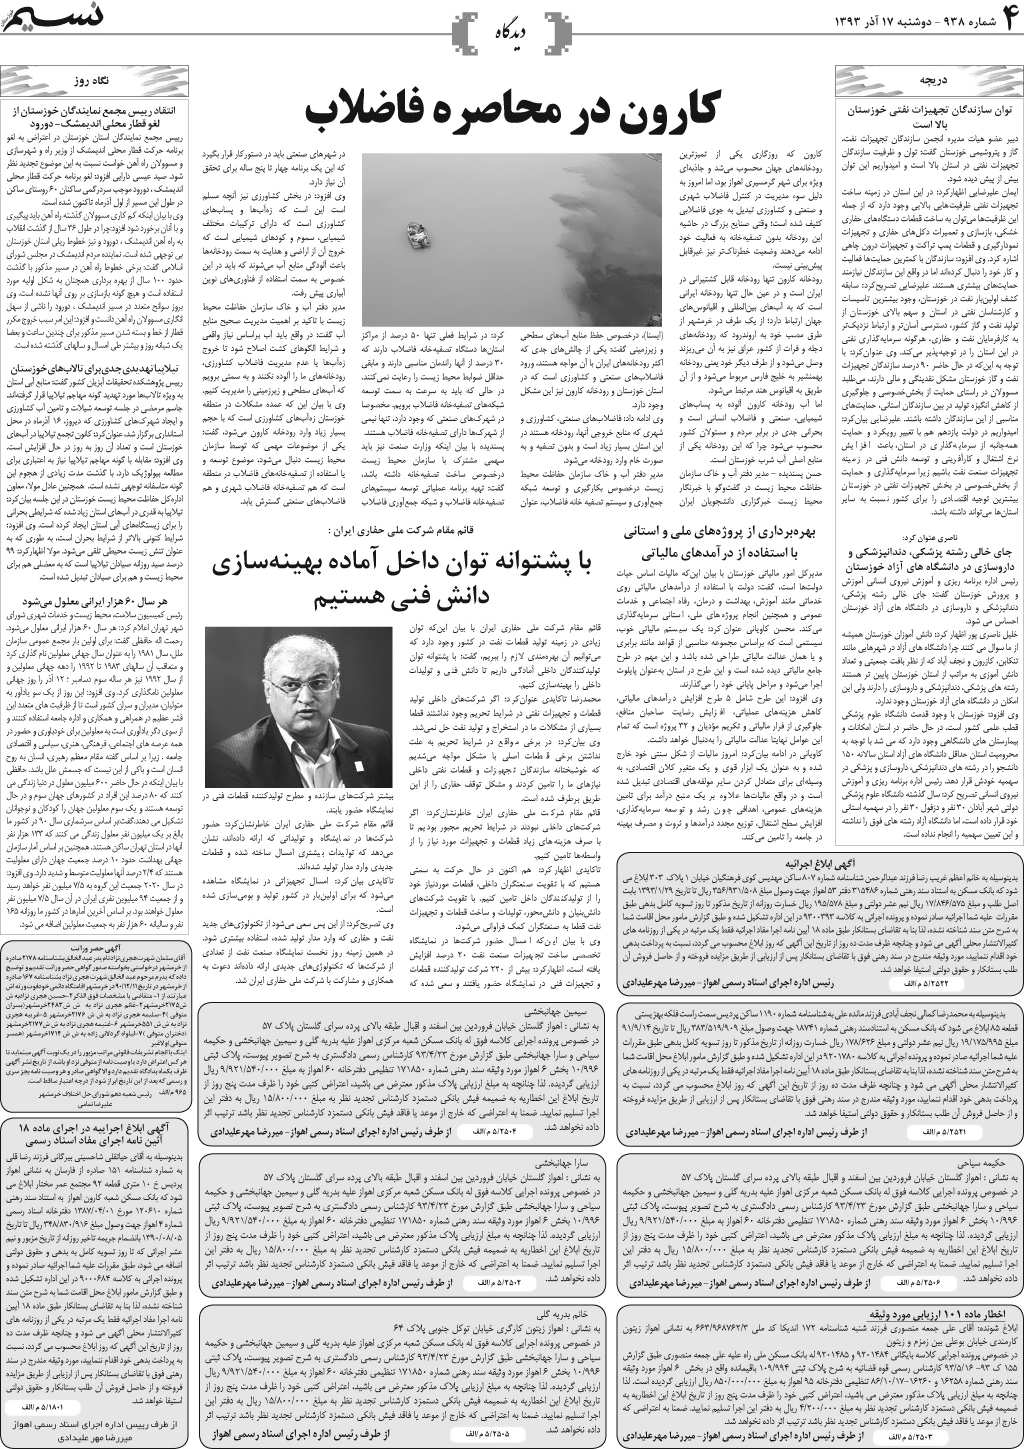 صفحه دیدگاه روزنامه نسیم شماره 938